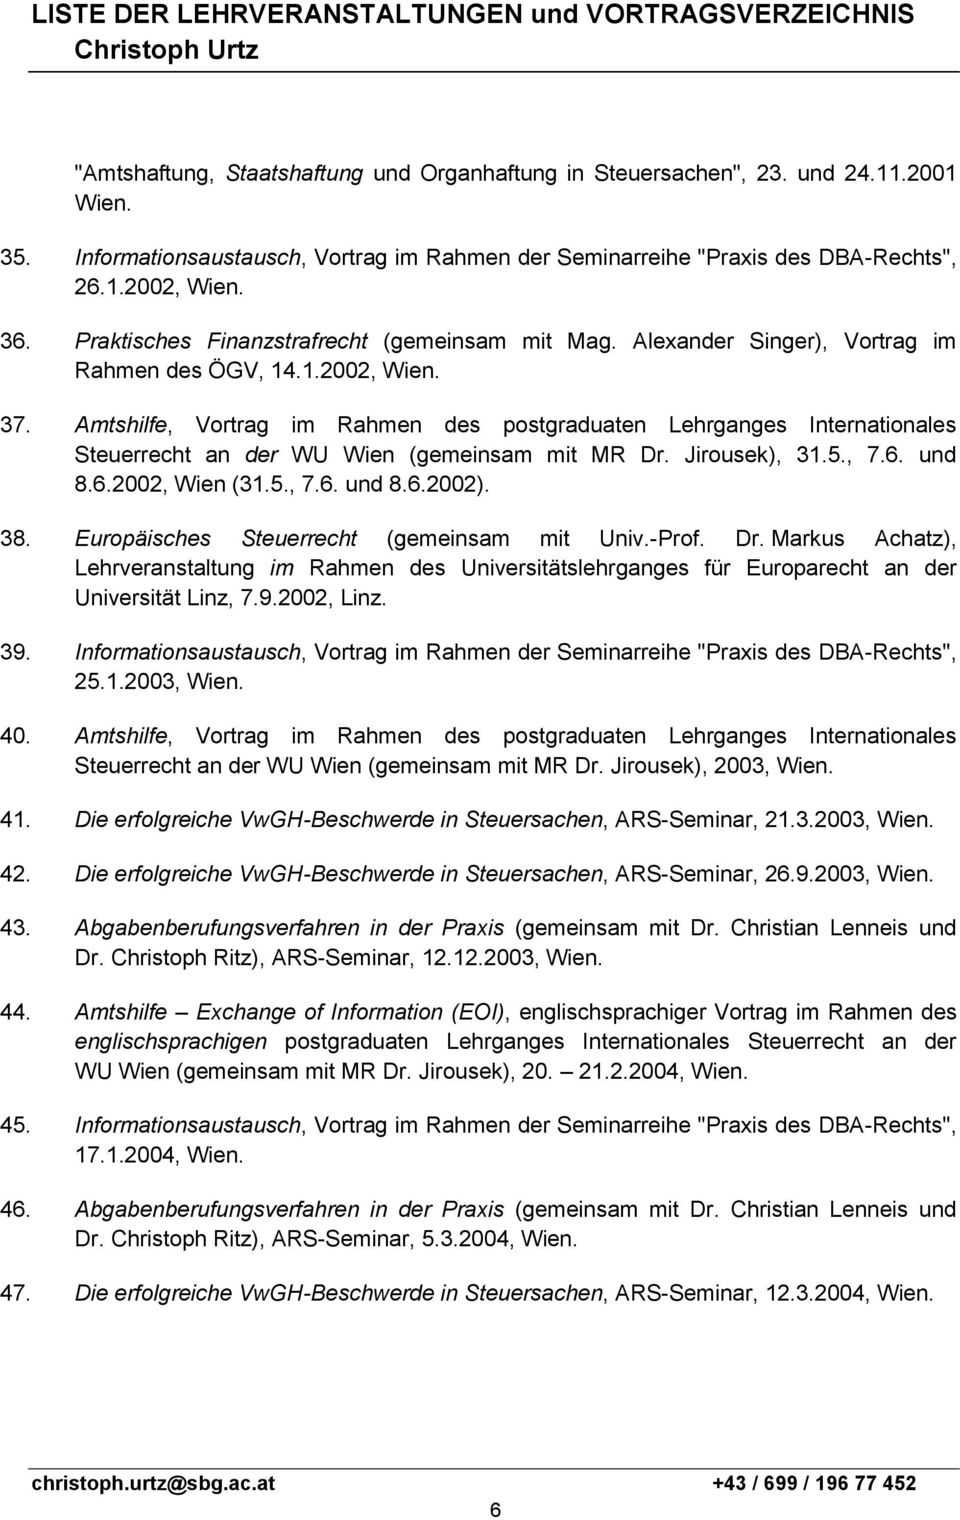 Amtshilfe, Vortrag im Rahmen des postgraduaten Lehrganges Internationales Steuerrecht an der WU Wien (gemeinsam mit MR Dr. Jirousek), 31.5., 7.6. und 8.6.2002, Wien (31.5., 7.6. und 8.6.2002). 38.